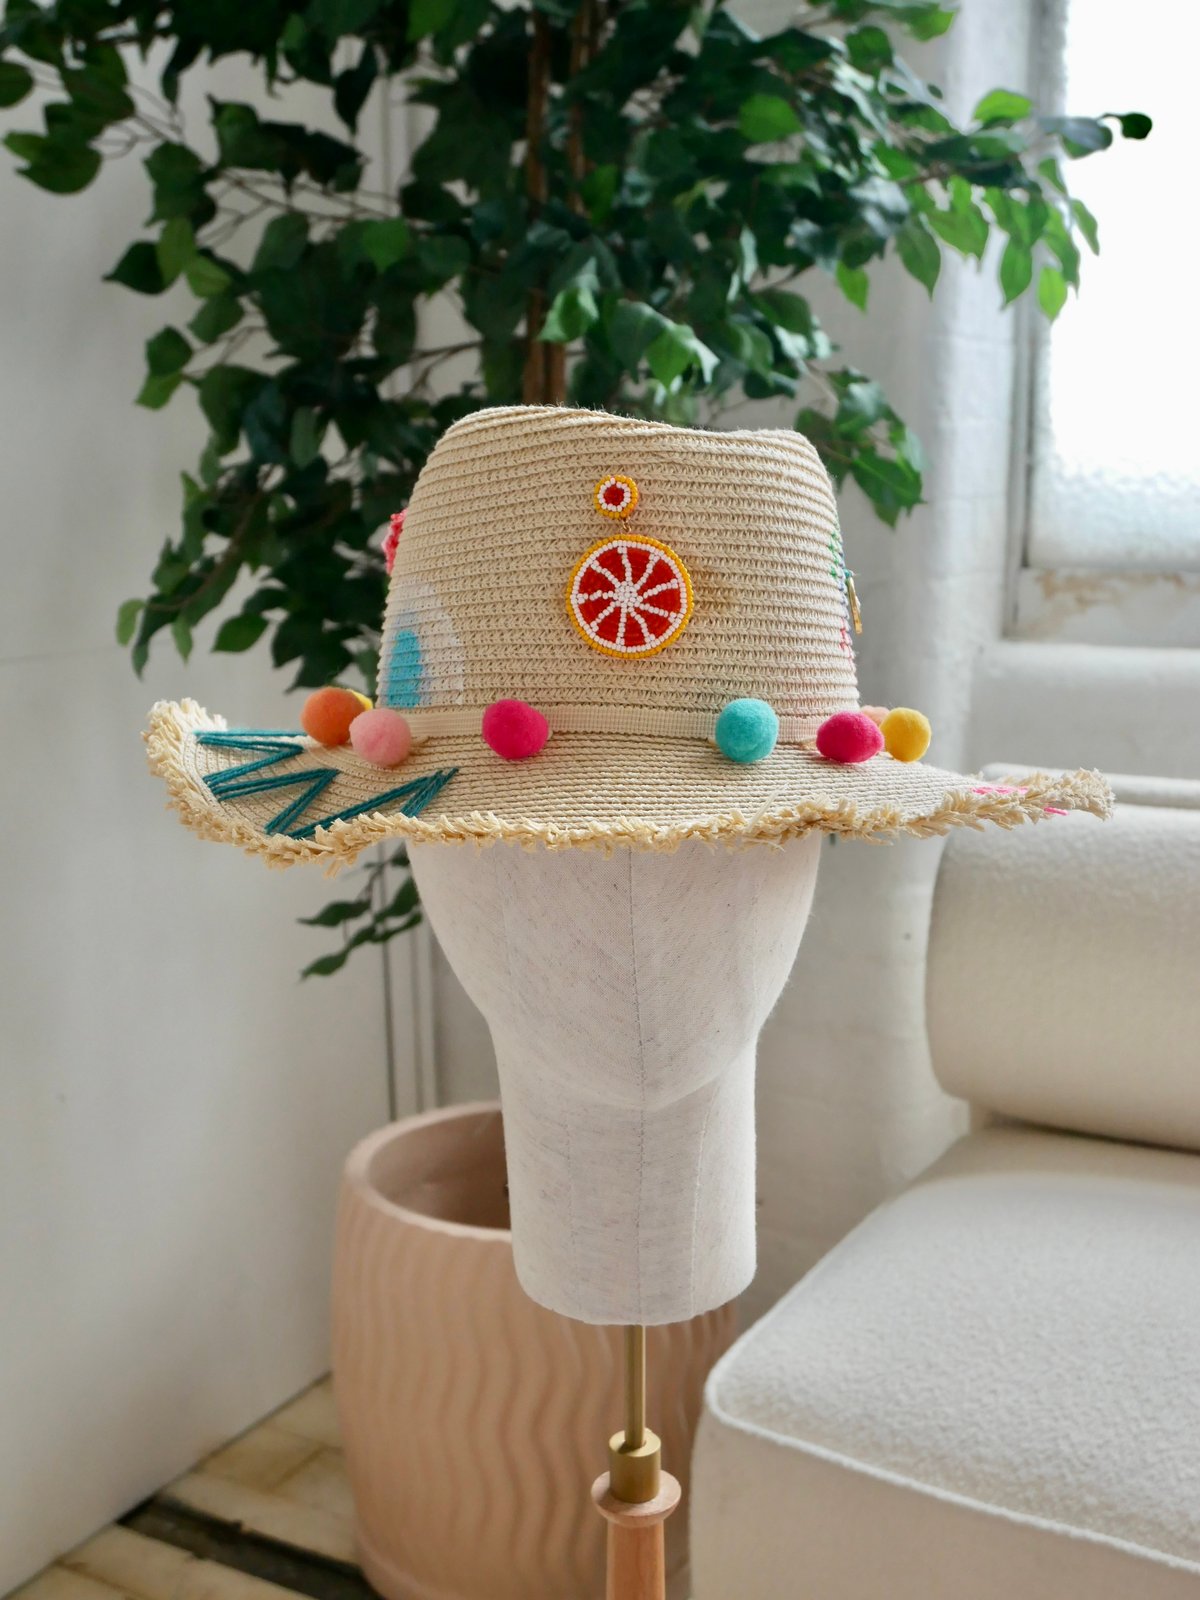 The Tulum Hat